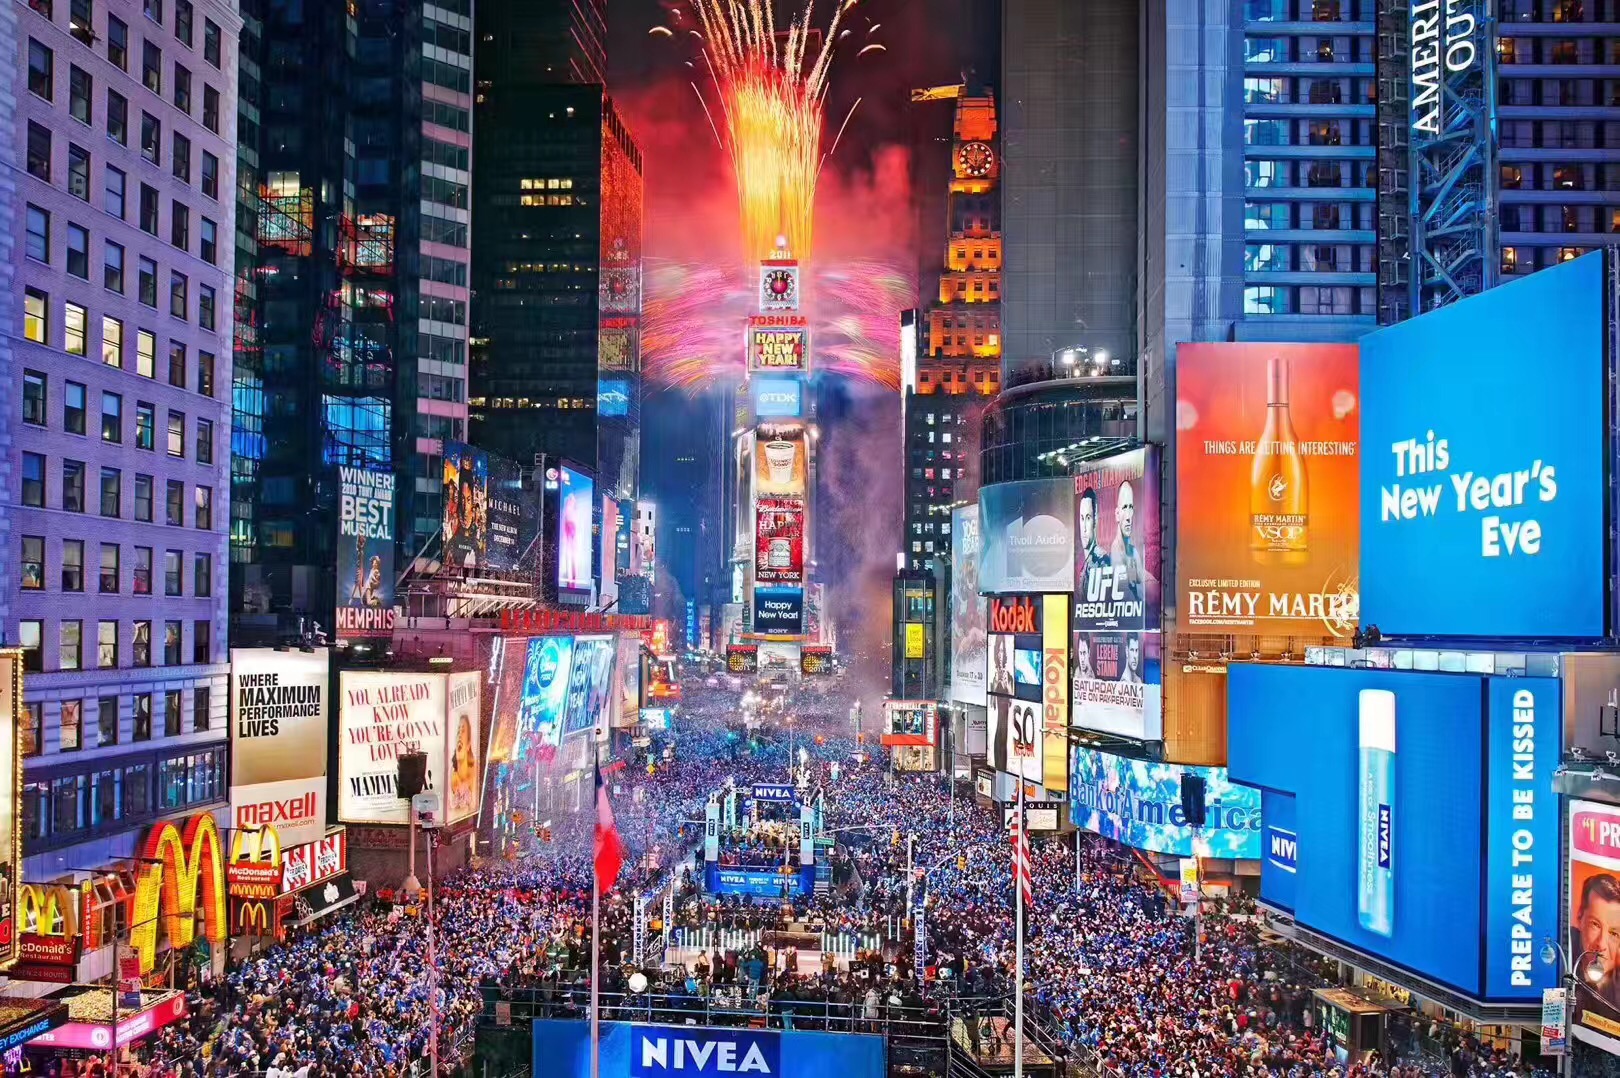 重庆旅游亮相纽约时报广场 世纪游轮 “挺进”美国